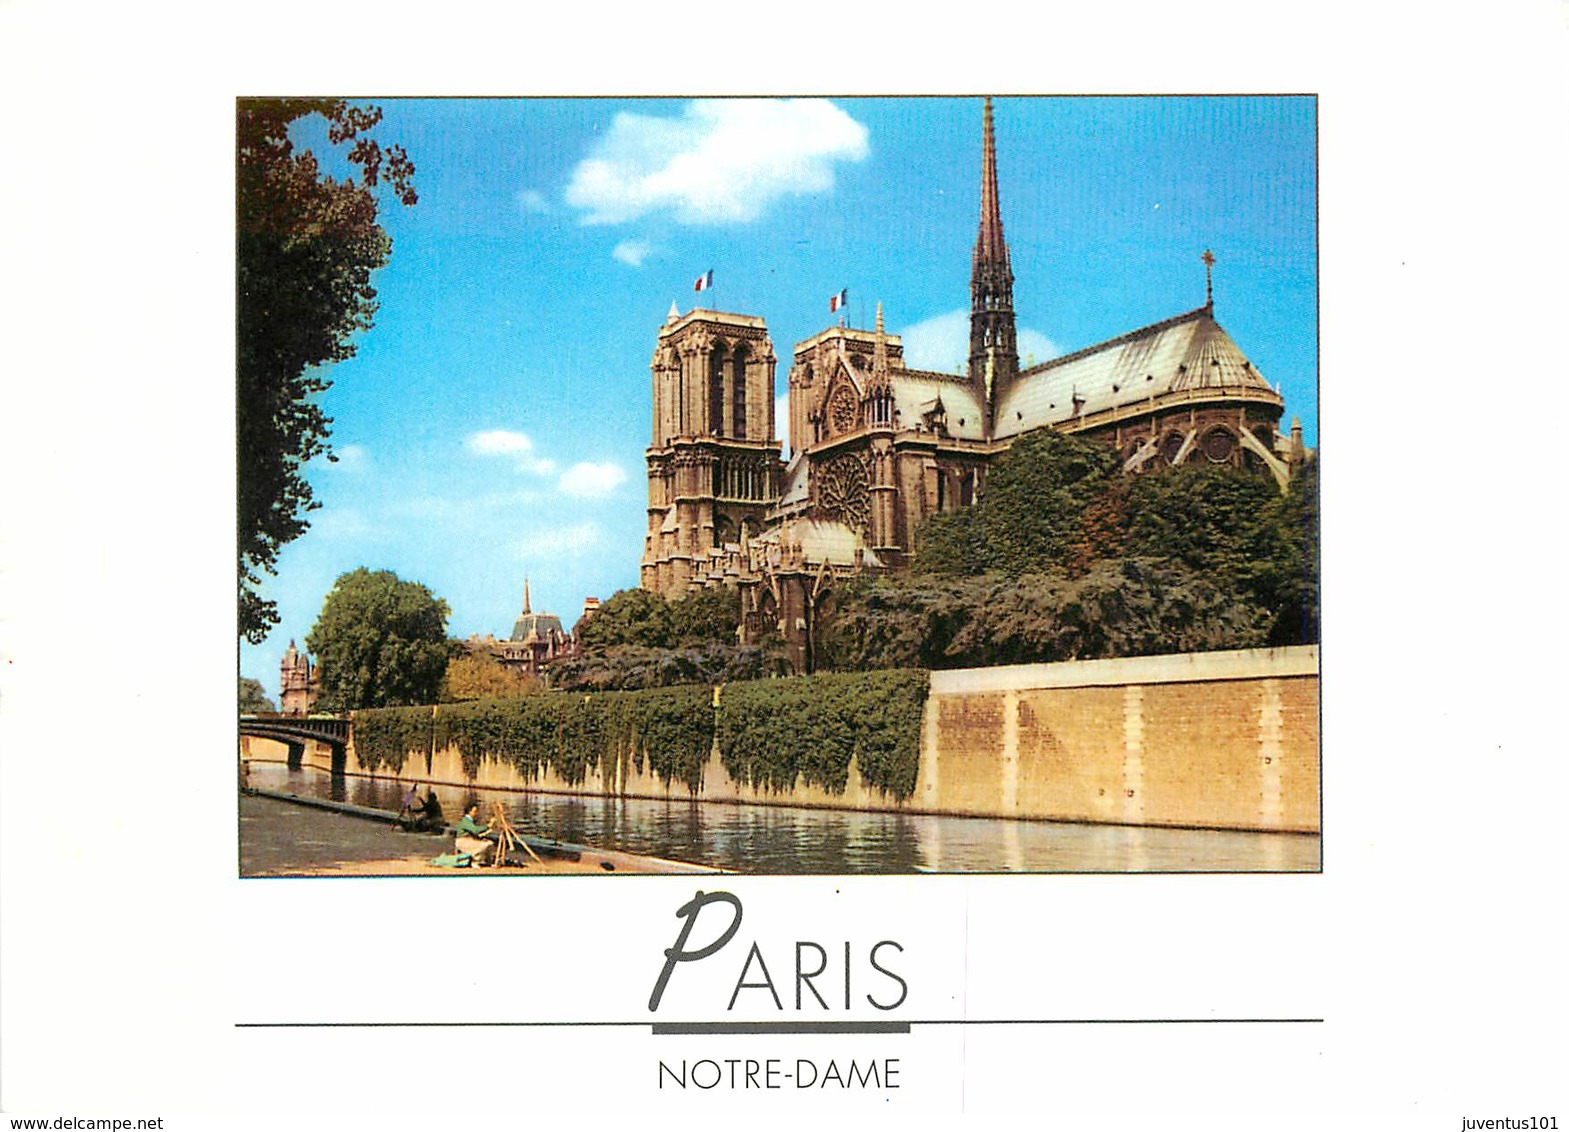 Lot de 10 CPSM PARIS-Toutes scannées-1      L2784